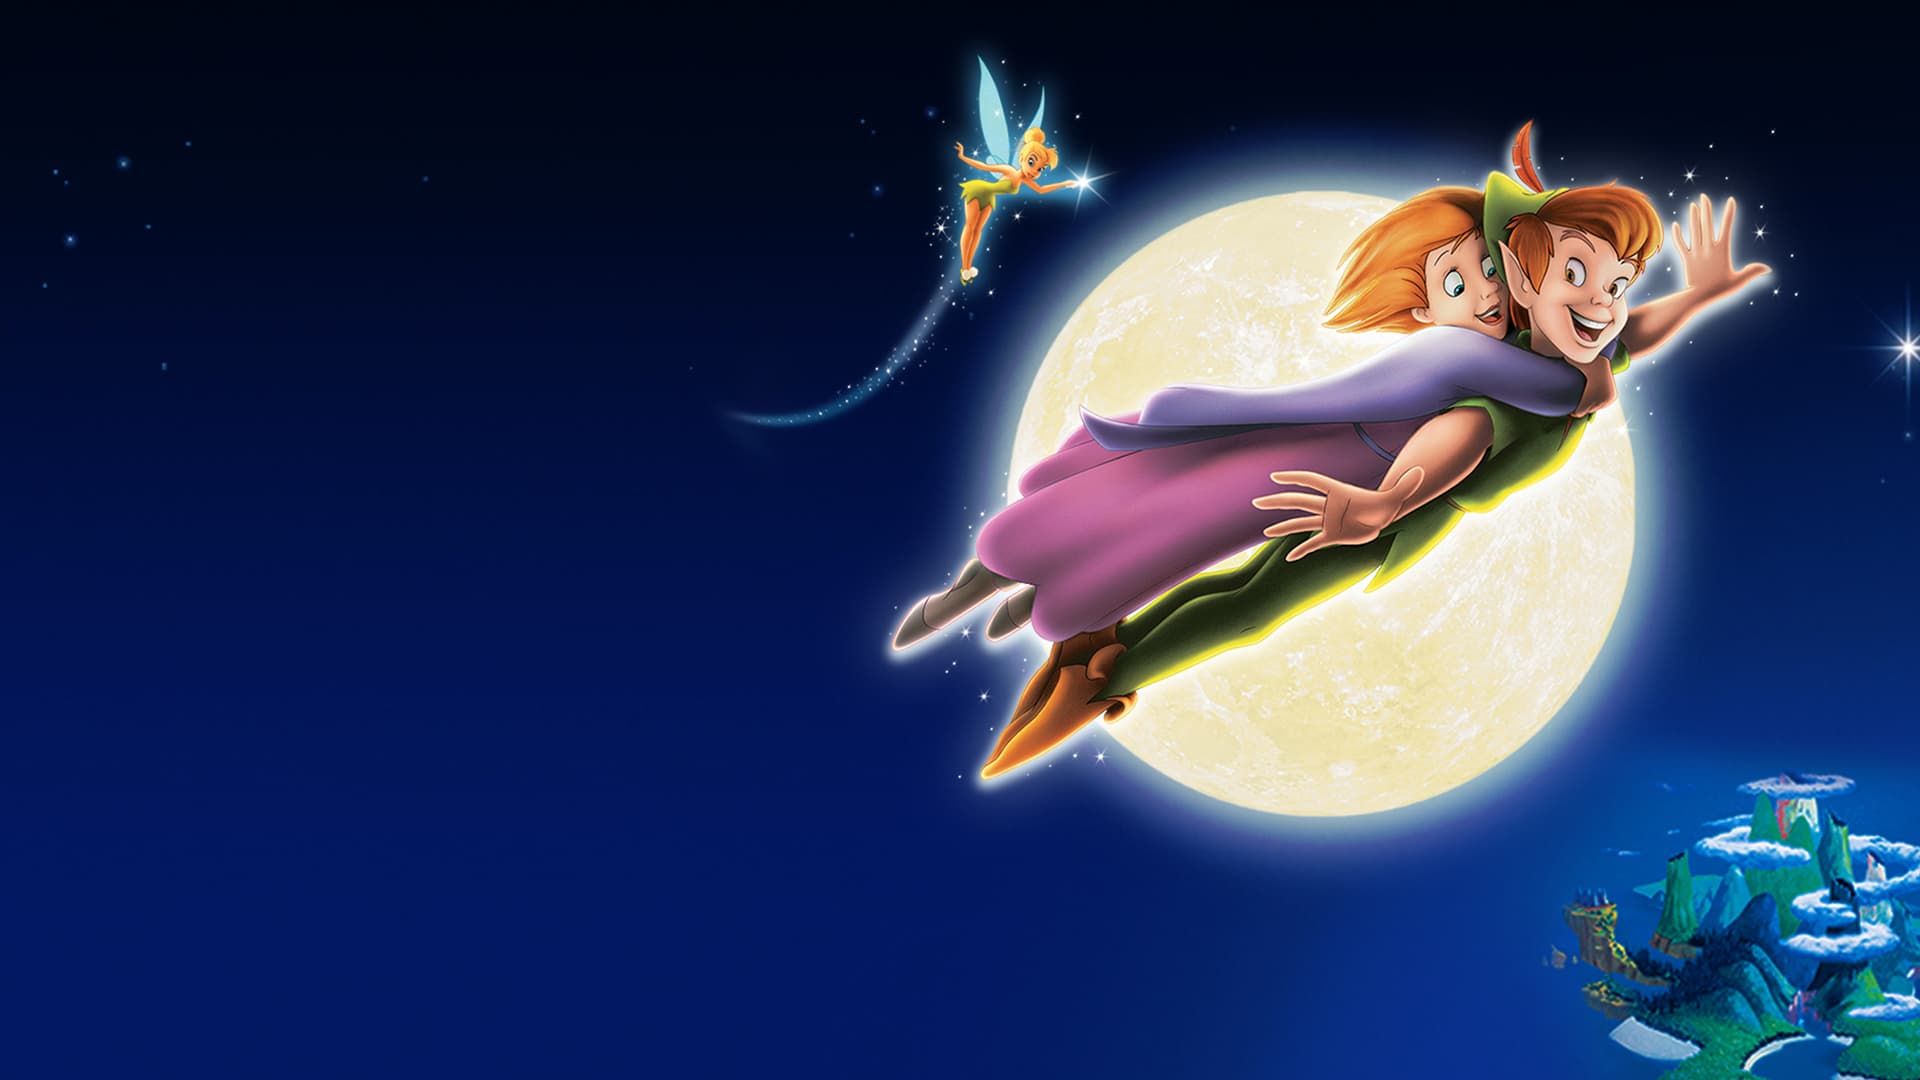 Disney's Peter Pan: Return to Never Land